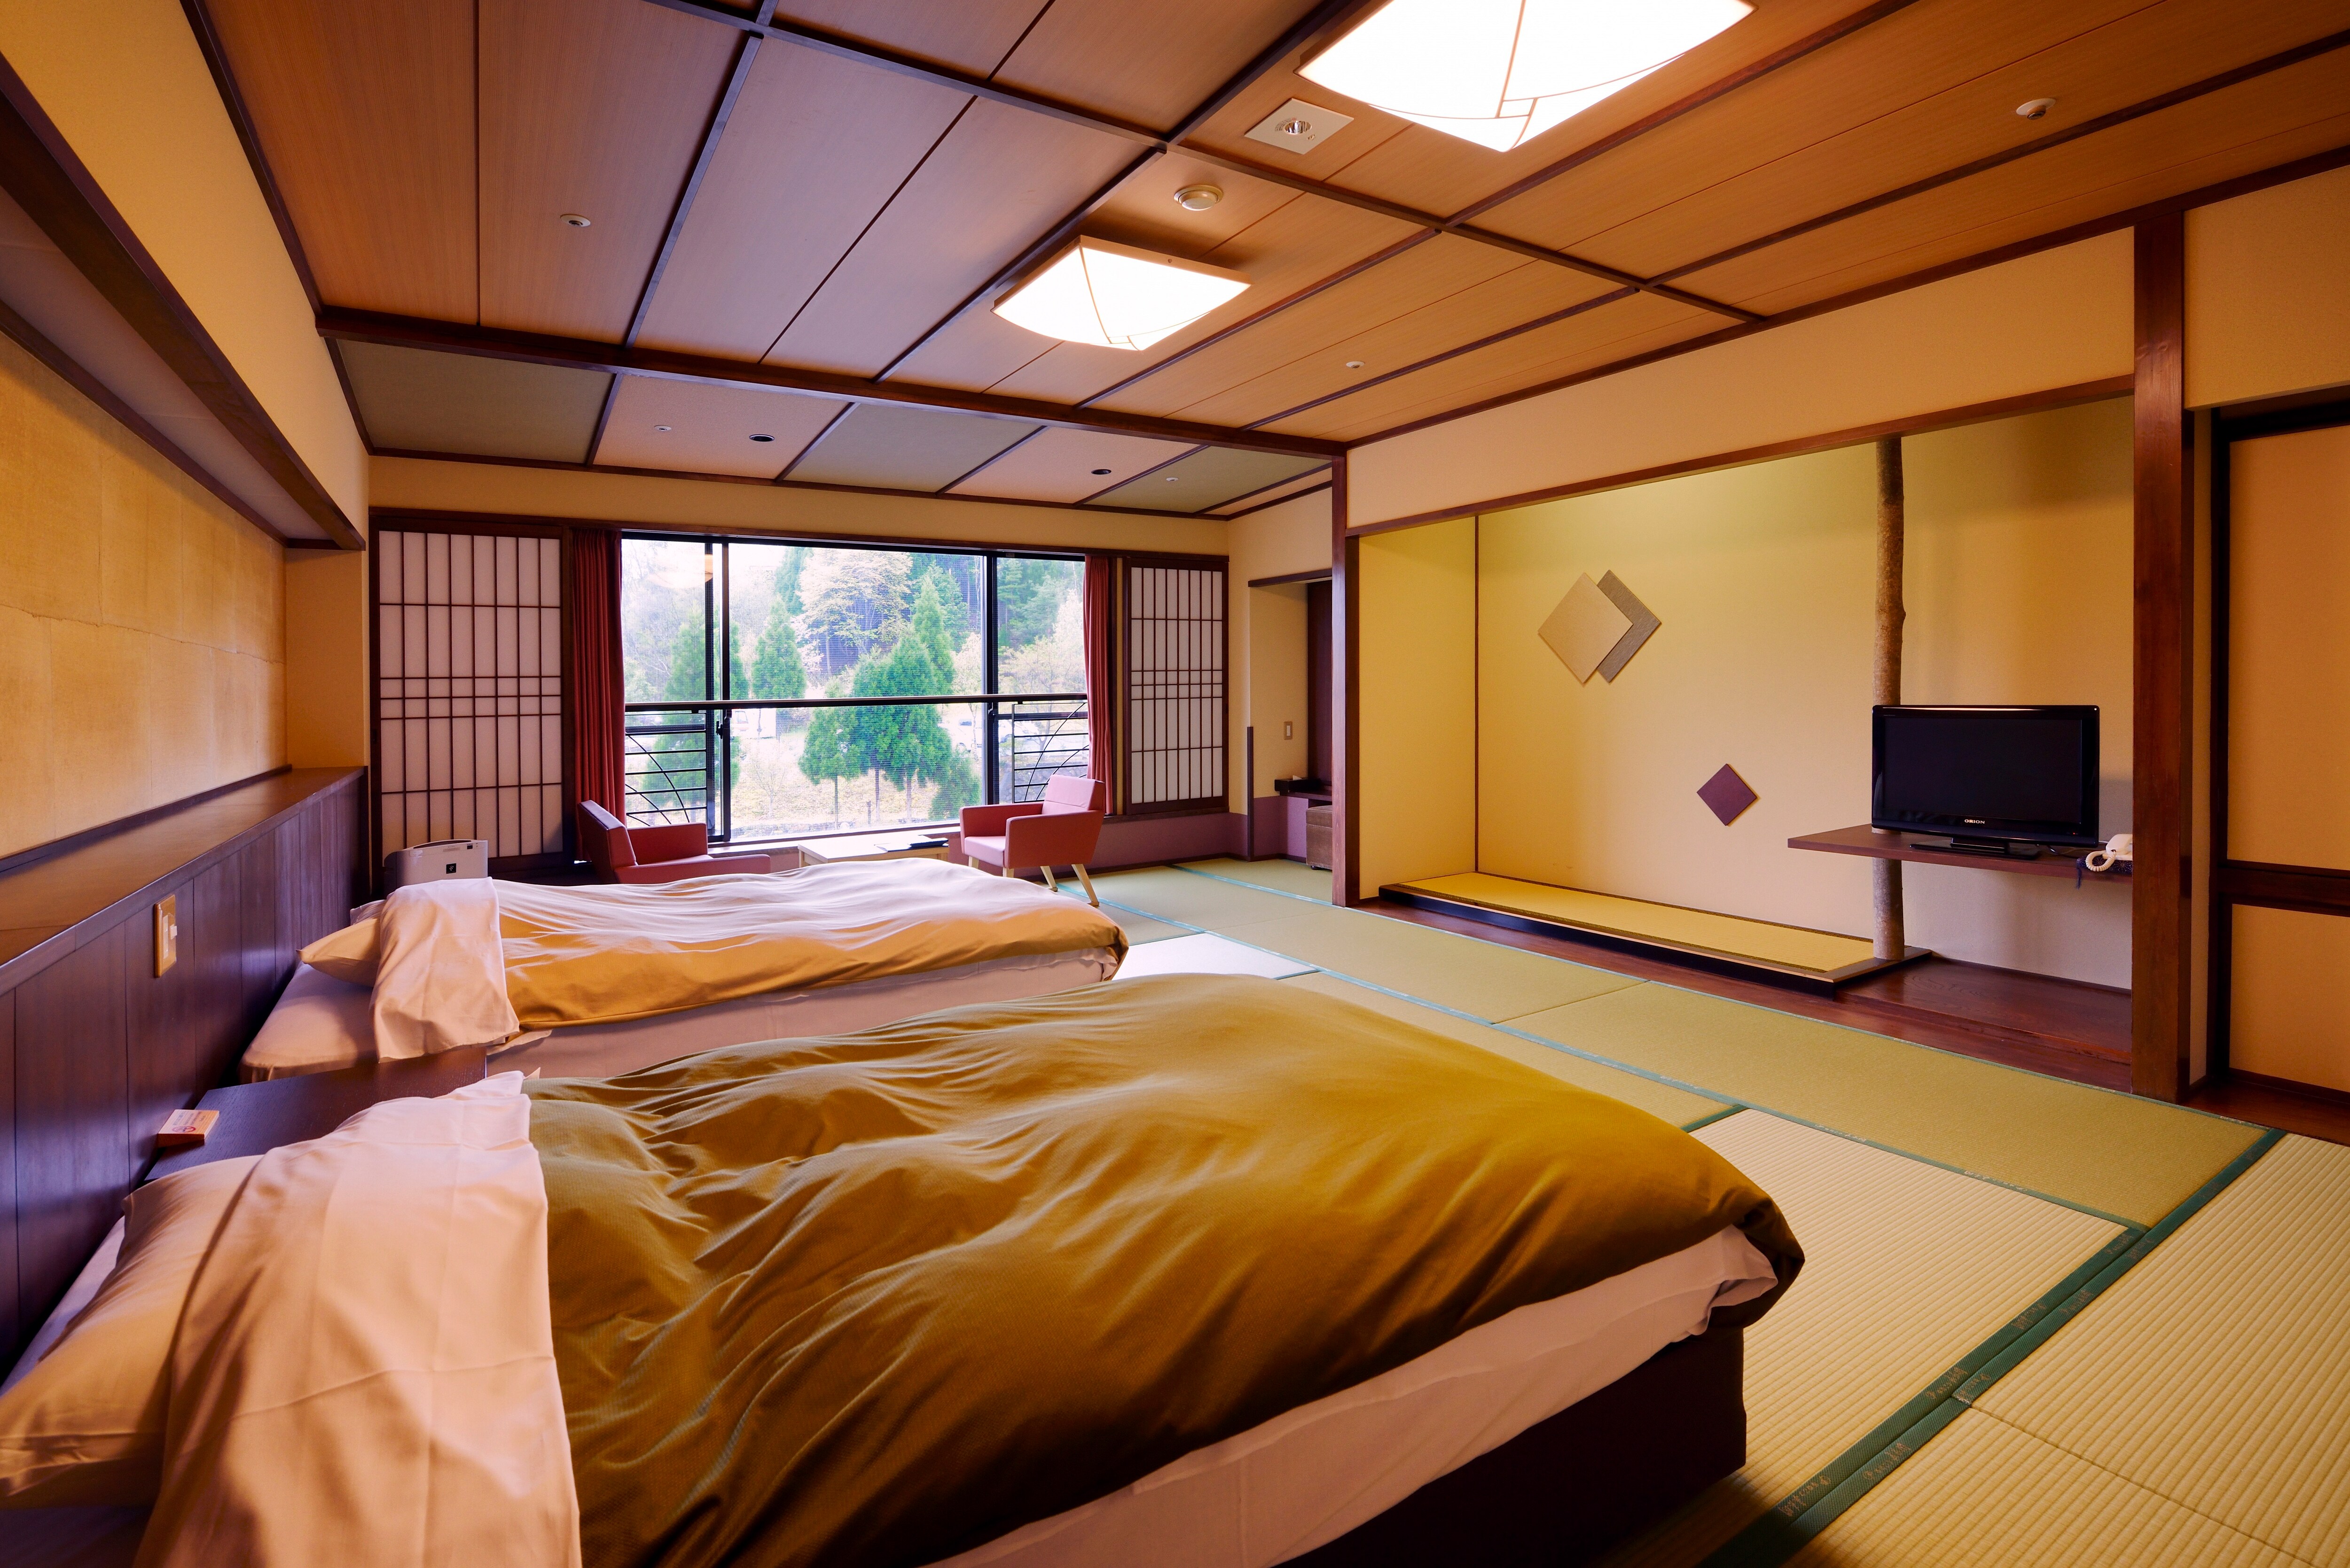 อาคารหลัก ชั้น 4 "ห้องสไตล์ญี่ปุ่นสมัยใหม่ (ปลอดบุหรี่)"